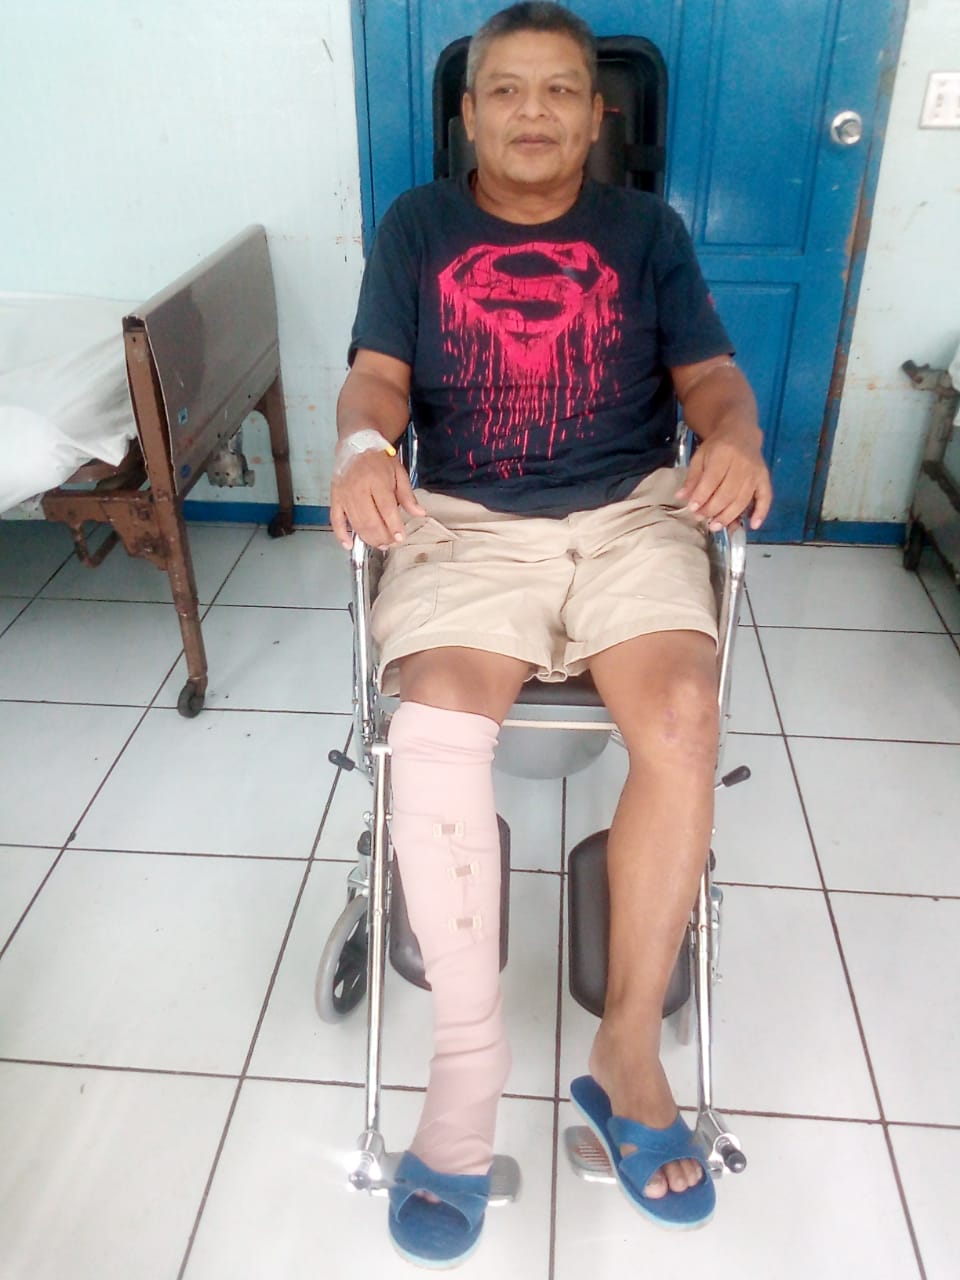 Max Cruz, preso político que fue tiroteado por paramilitares orteguistas. Corre riesgo de perder su pierna derecha. Foto: Cortesía.